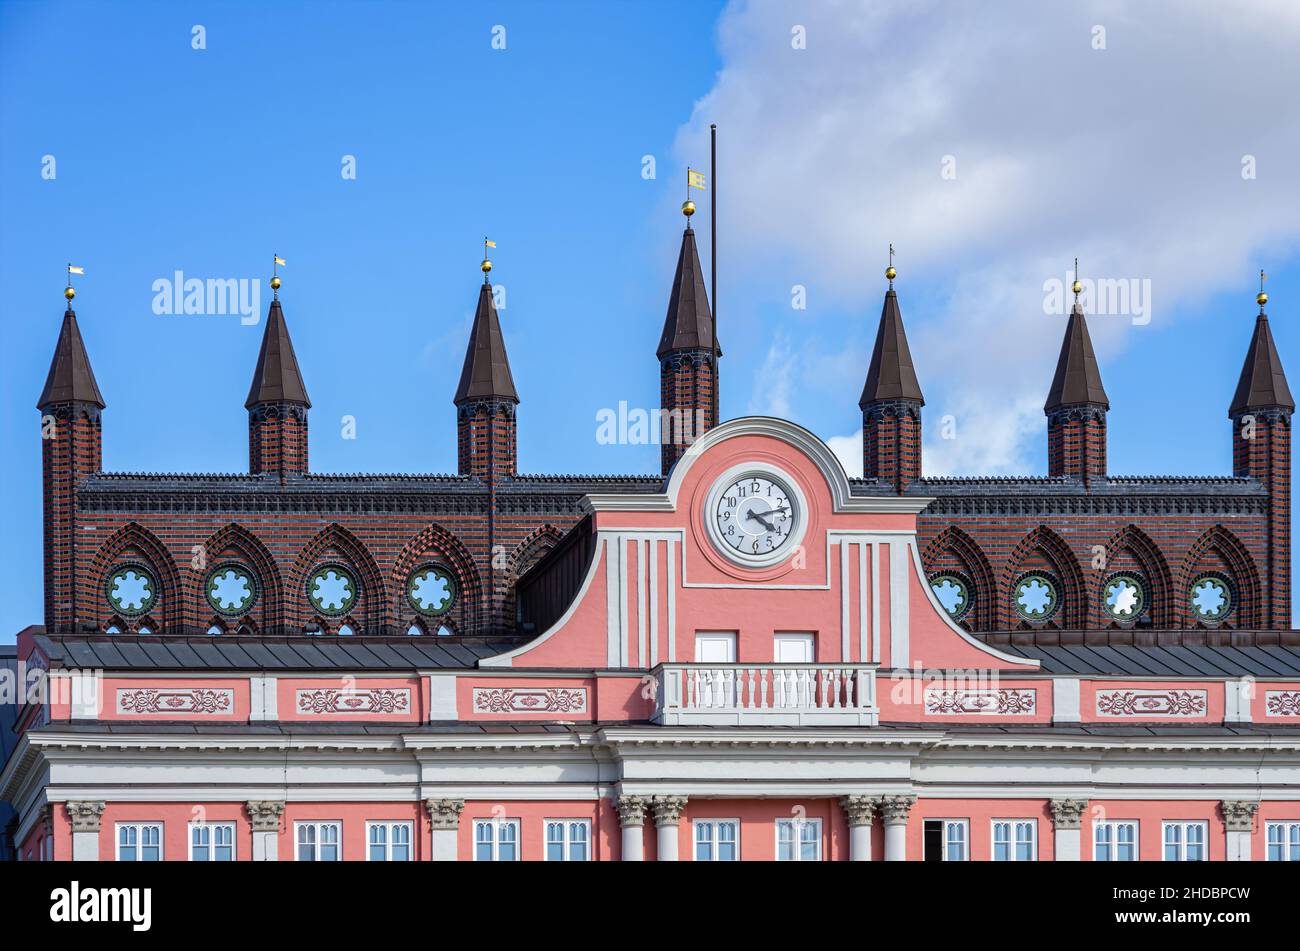 Sección superior del ayuntamiento de la ciudad hanseática de Rostock, Mecklemburgo-Pomerania Occidental, Alemania. Foto de stock